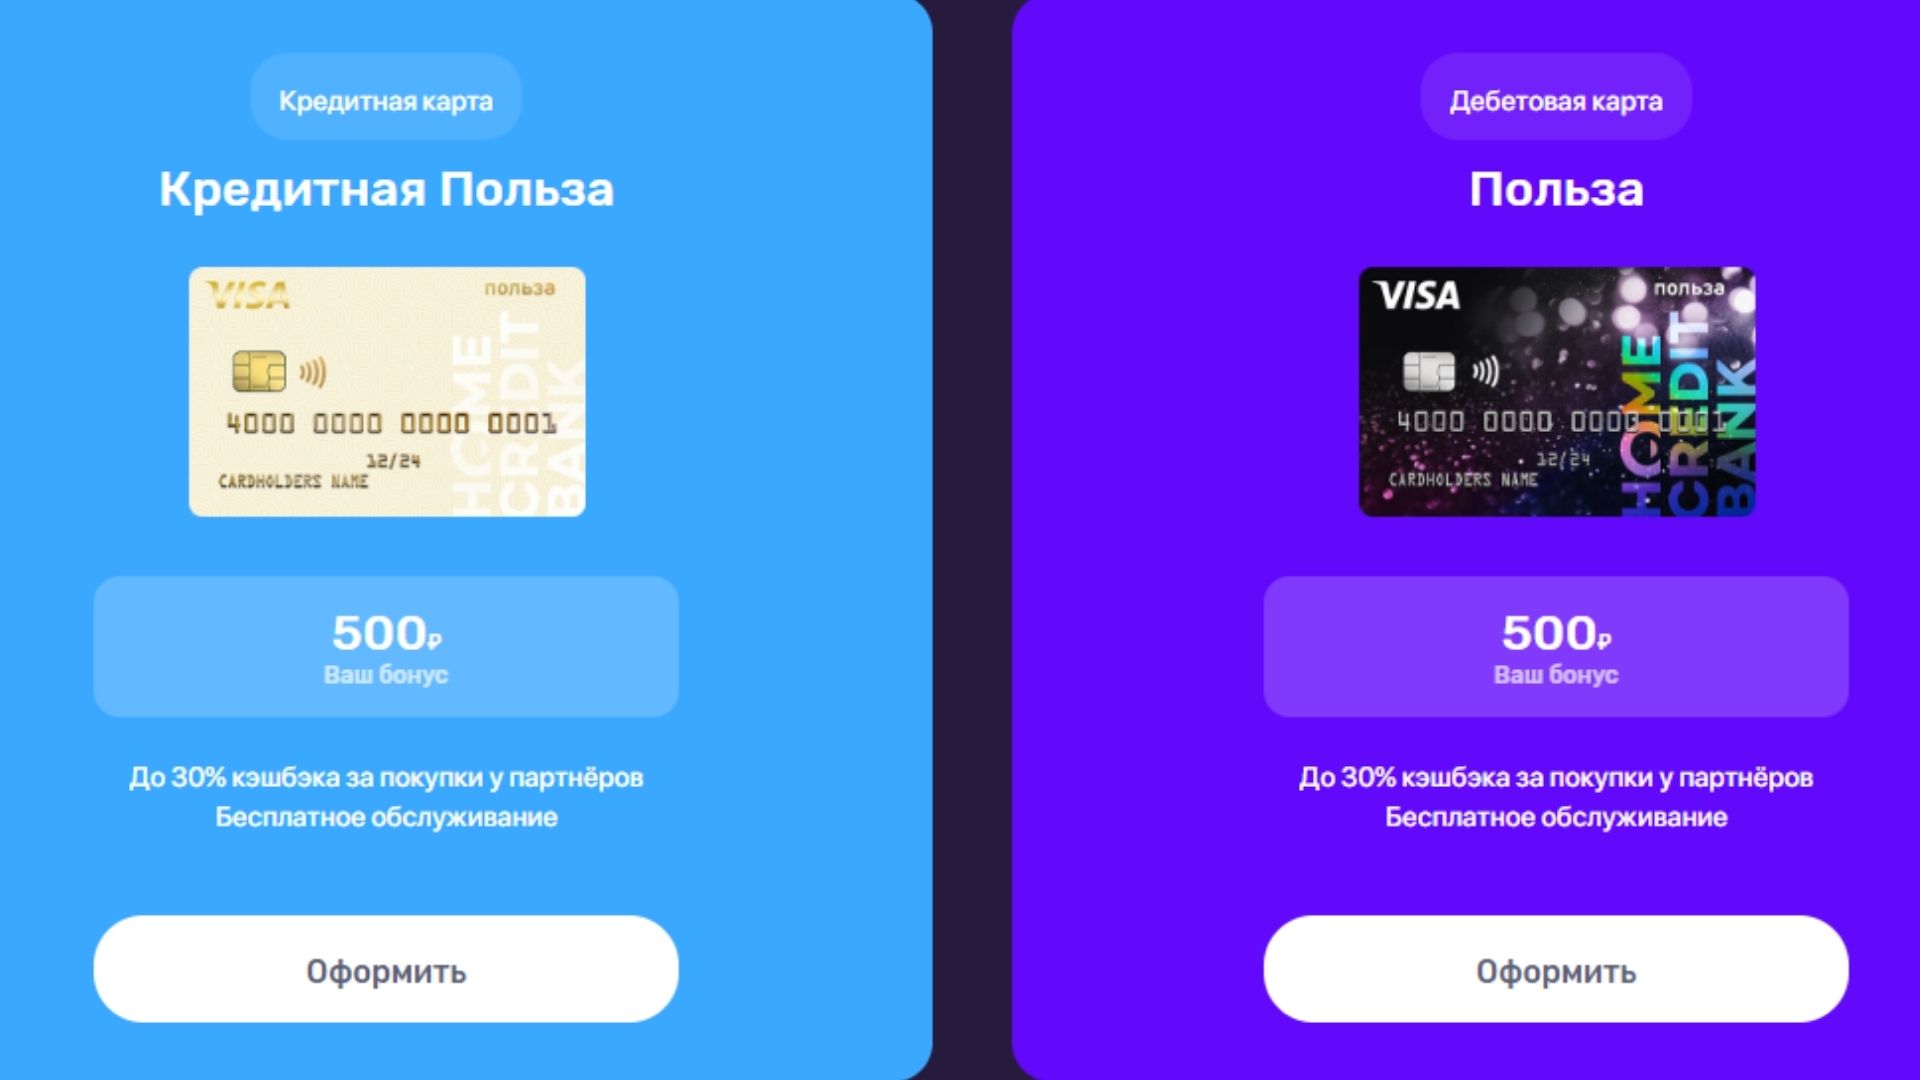 Хоум кредит банк Приведи друга оформить карту за бонус 500 рублей